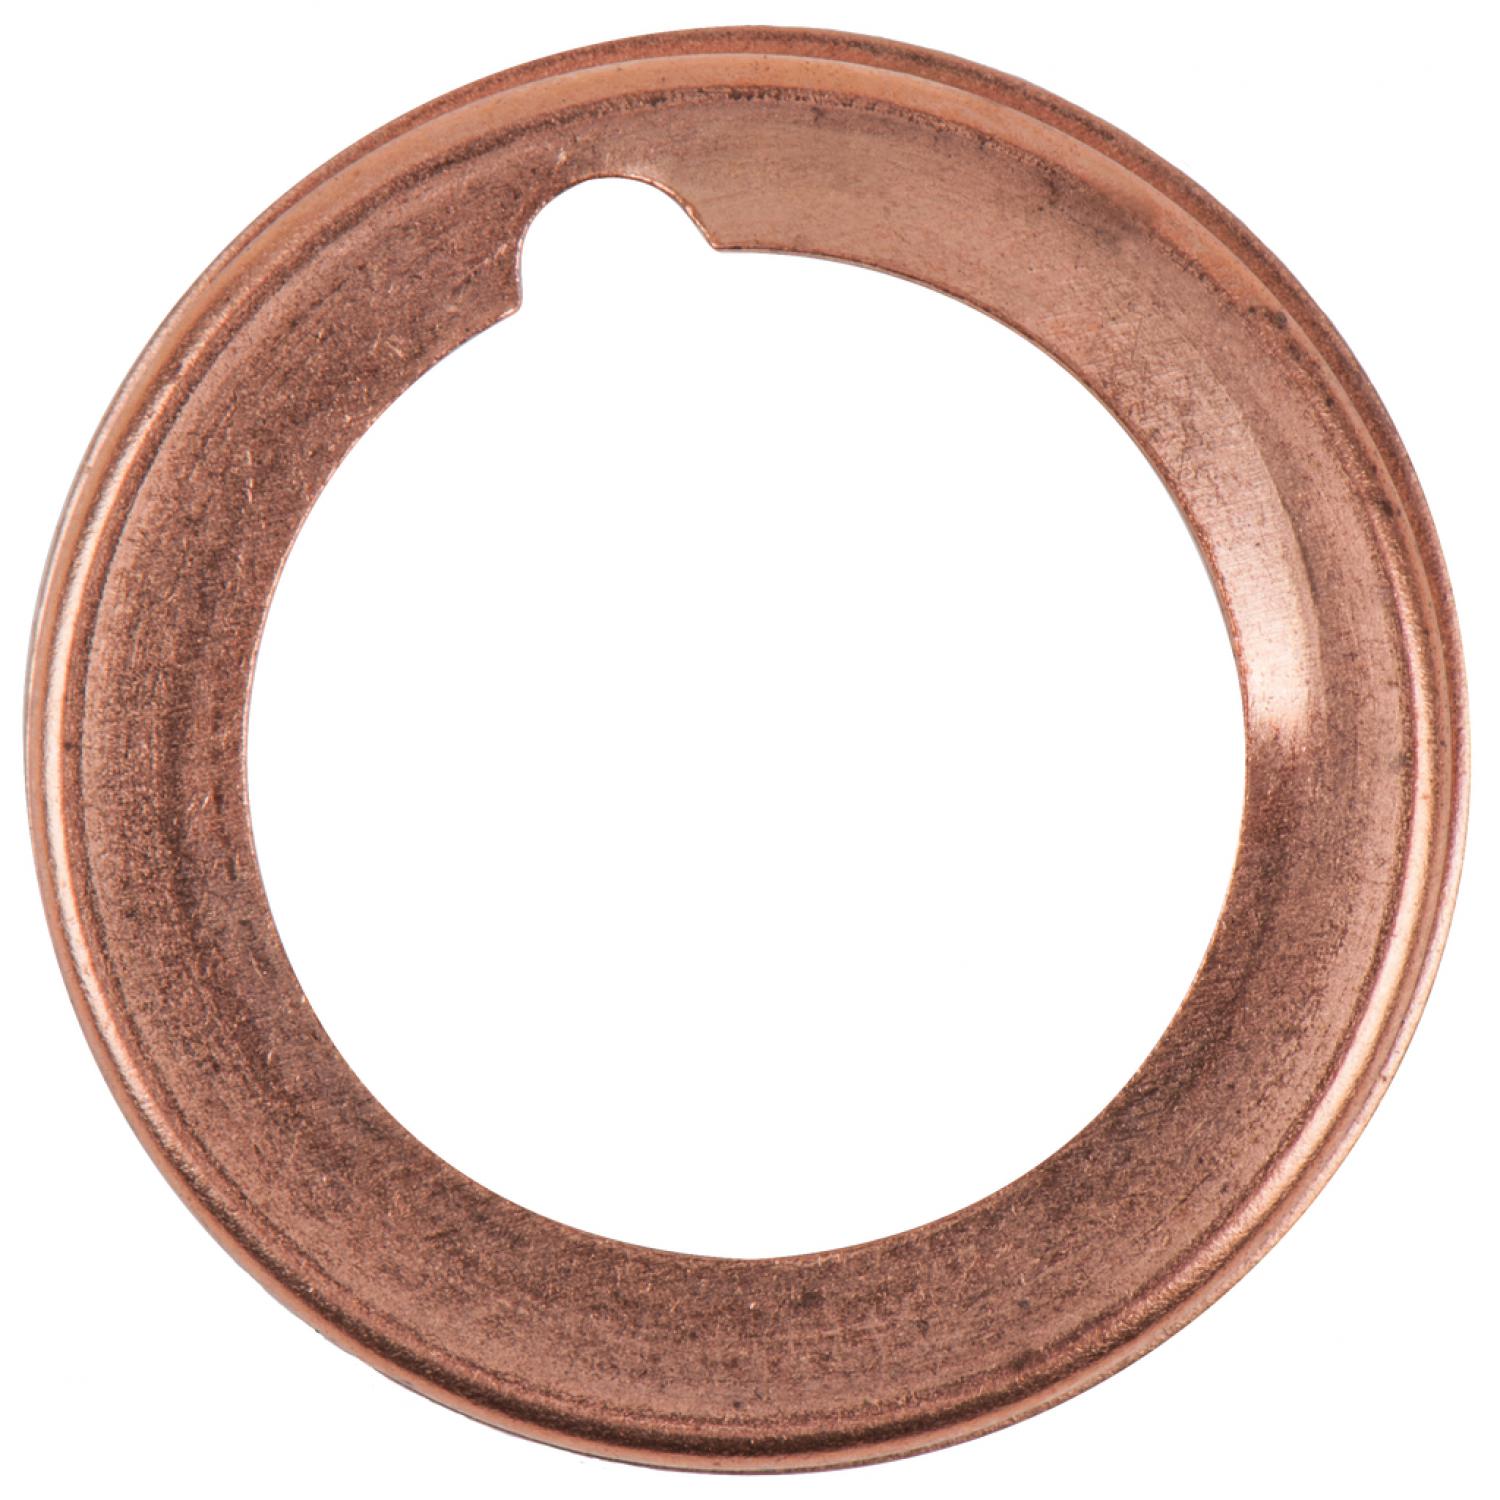 Уплотнительное кольцо, с углублением, внешний Ø 21 мм, внутренний Ø 15 мм, 10 шт в упаковке